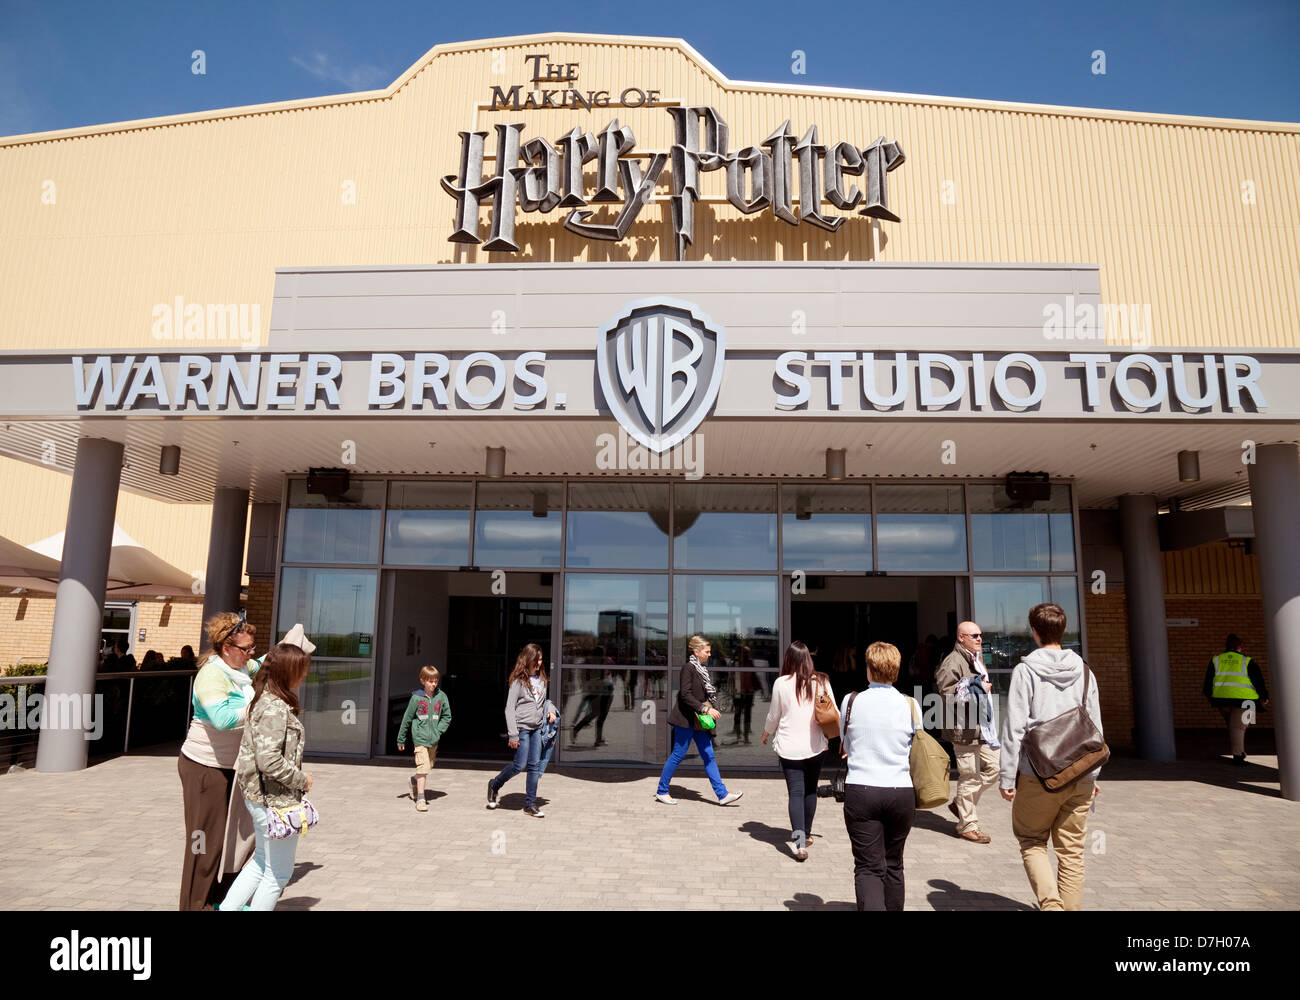 Personnes à l'extérieur de l'entrée de Harry Potter World Warner Bros Studio Tour, Watford, Londres Royaume-Uni Banque D'Images